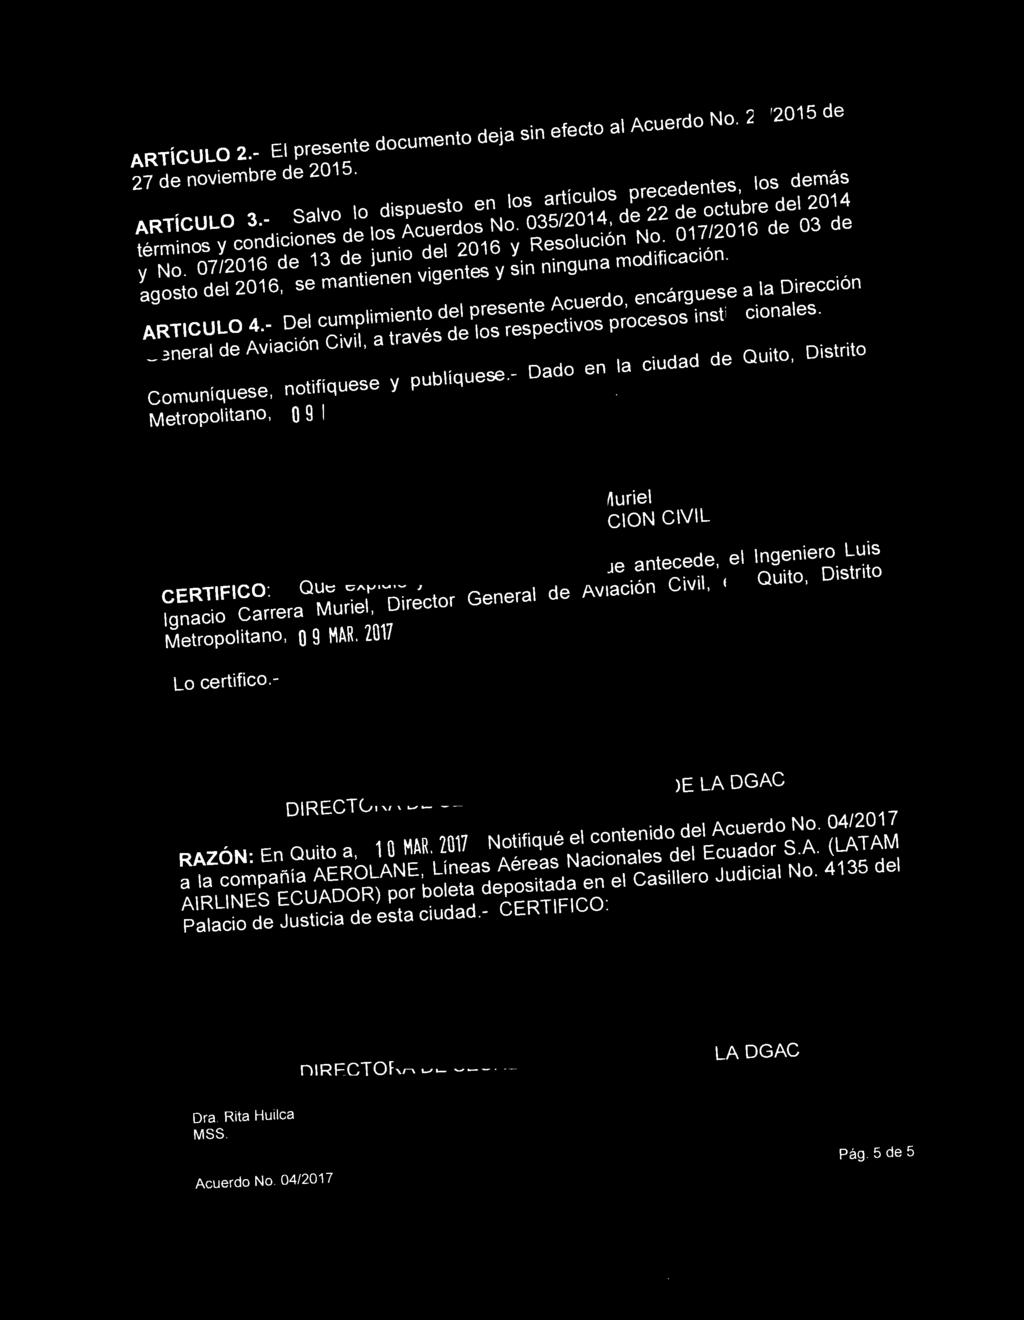 ARTiCULO 2.- El presente documento deja sin efecto al Acuerdo No. 21/2015 de 27 de noviembre de 2015. ARTiCULO 3.